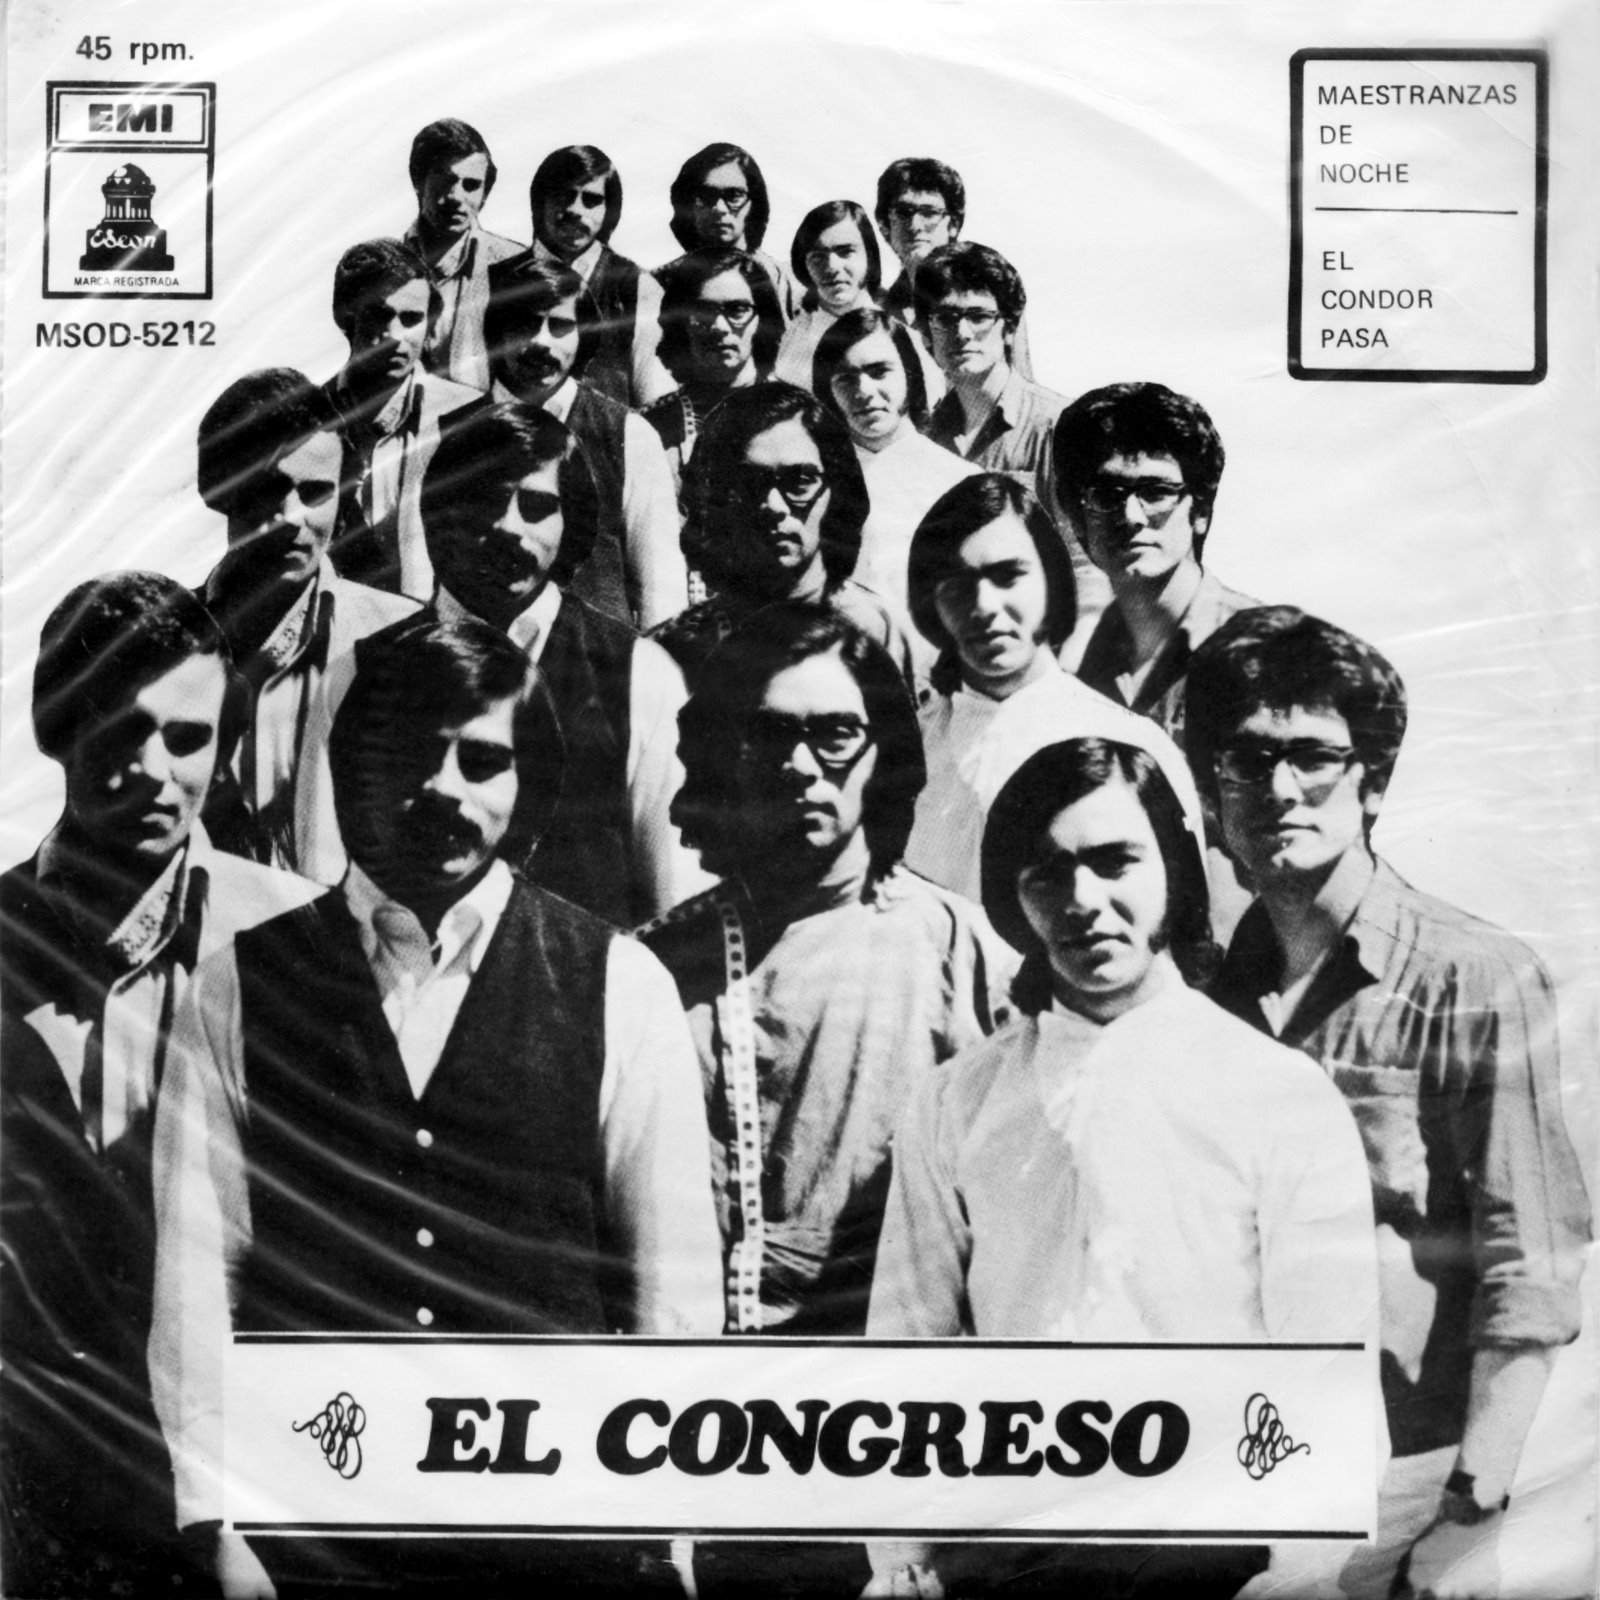 [Congreso+-+1970+Maestranzas+de+noche+01.jpg]